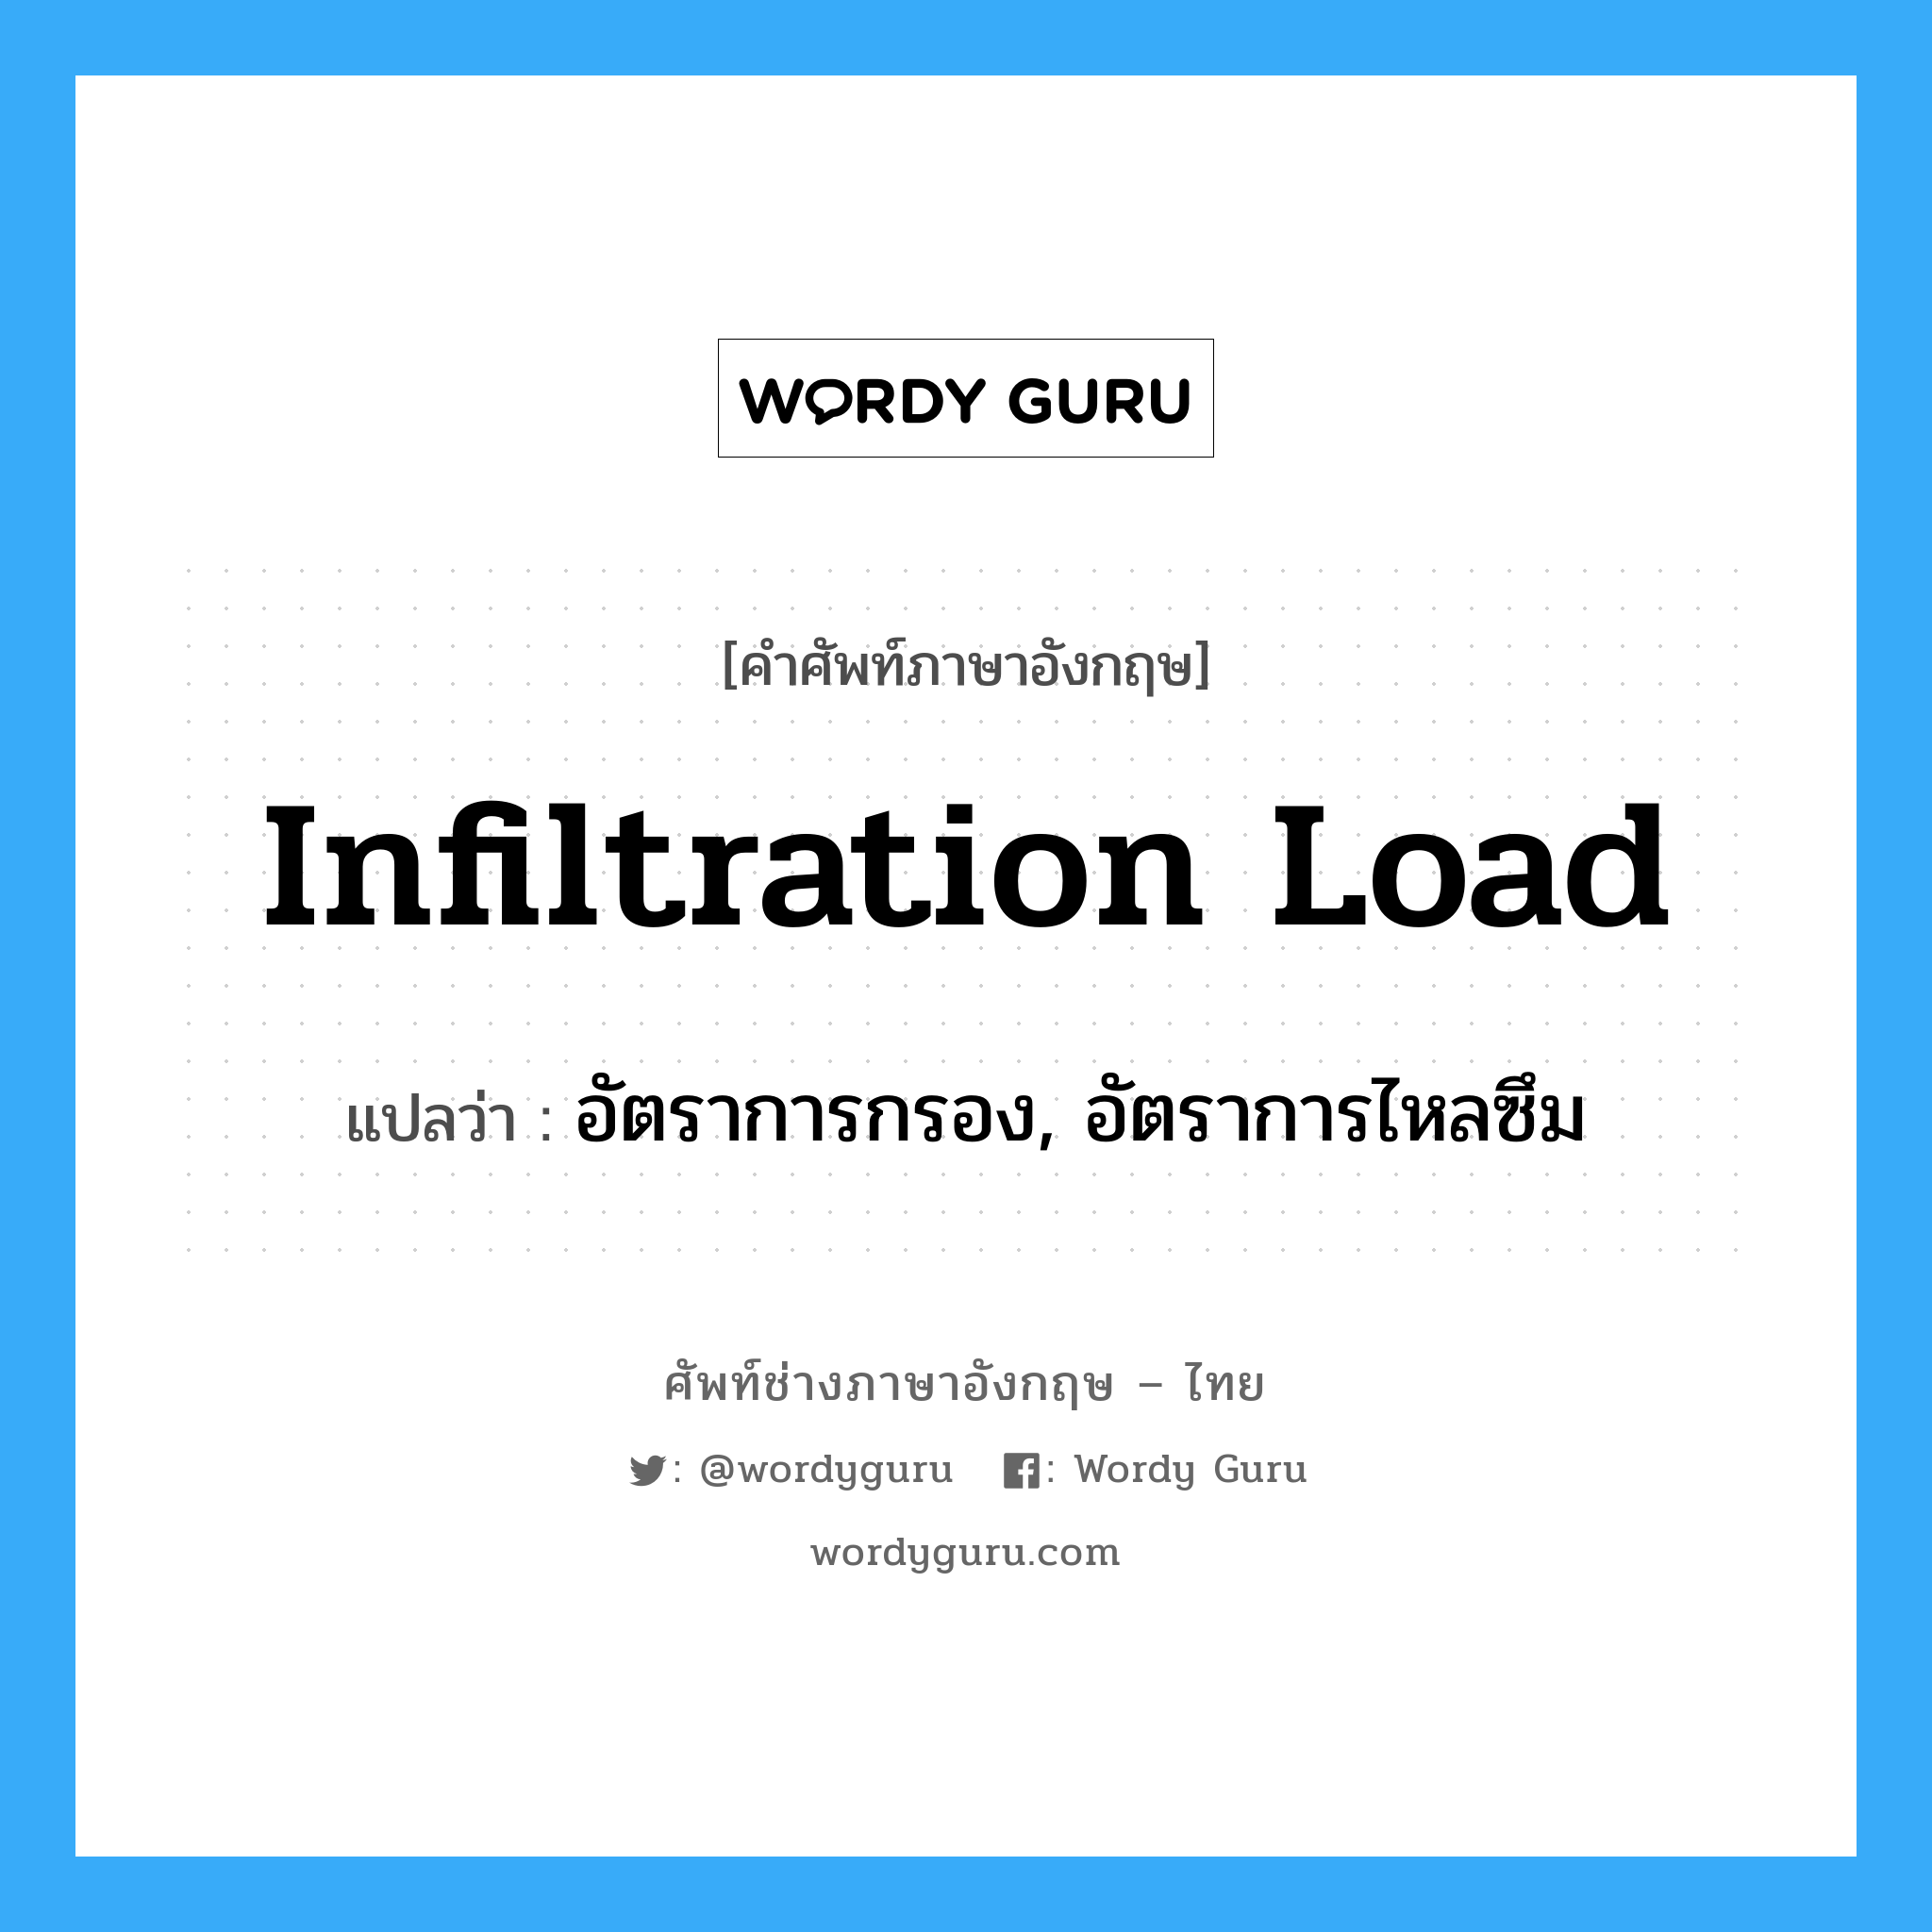 infiltration load แปลว่า?, คำศัพท์ช่างภาษาอังกฤษ - ไทย infiltration load คำศัพท์ภาษาอังกฤษ infiltration load แปลว่า อัตราการกรอง, อัตราการไหลซึม